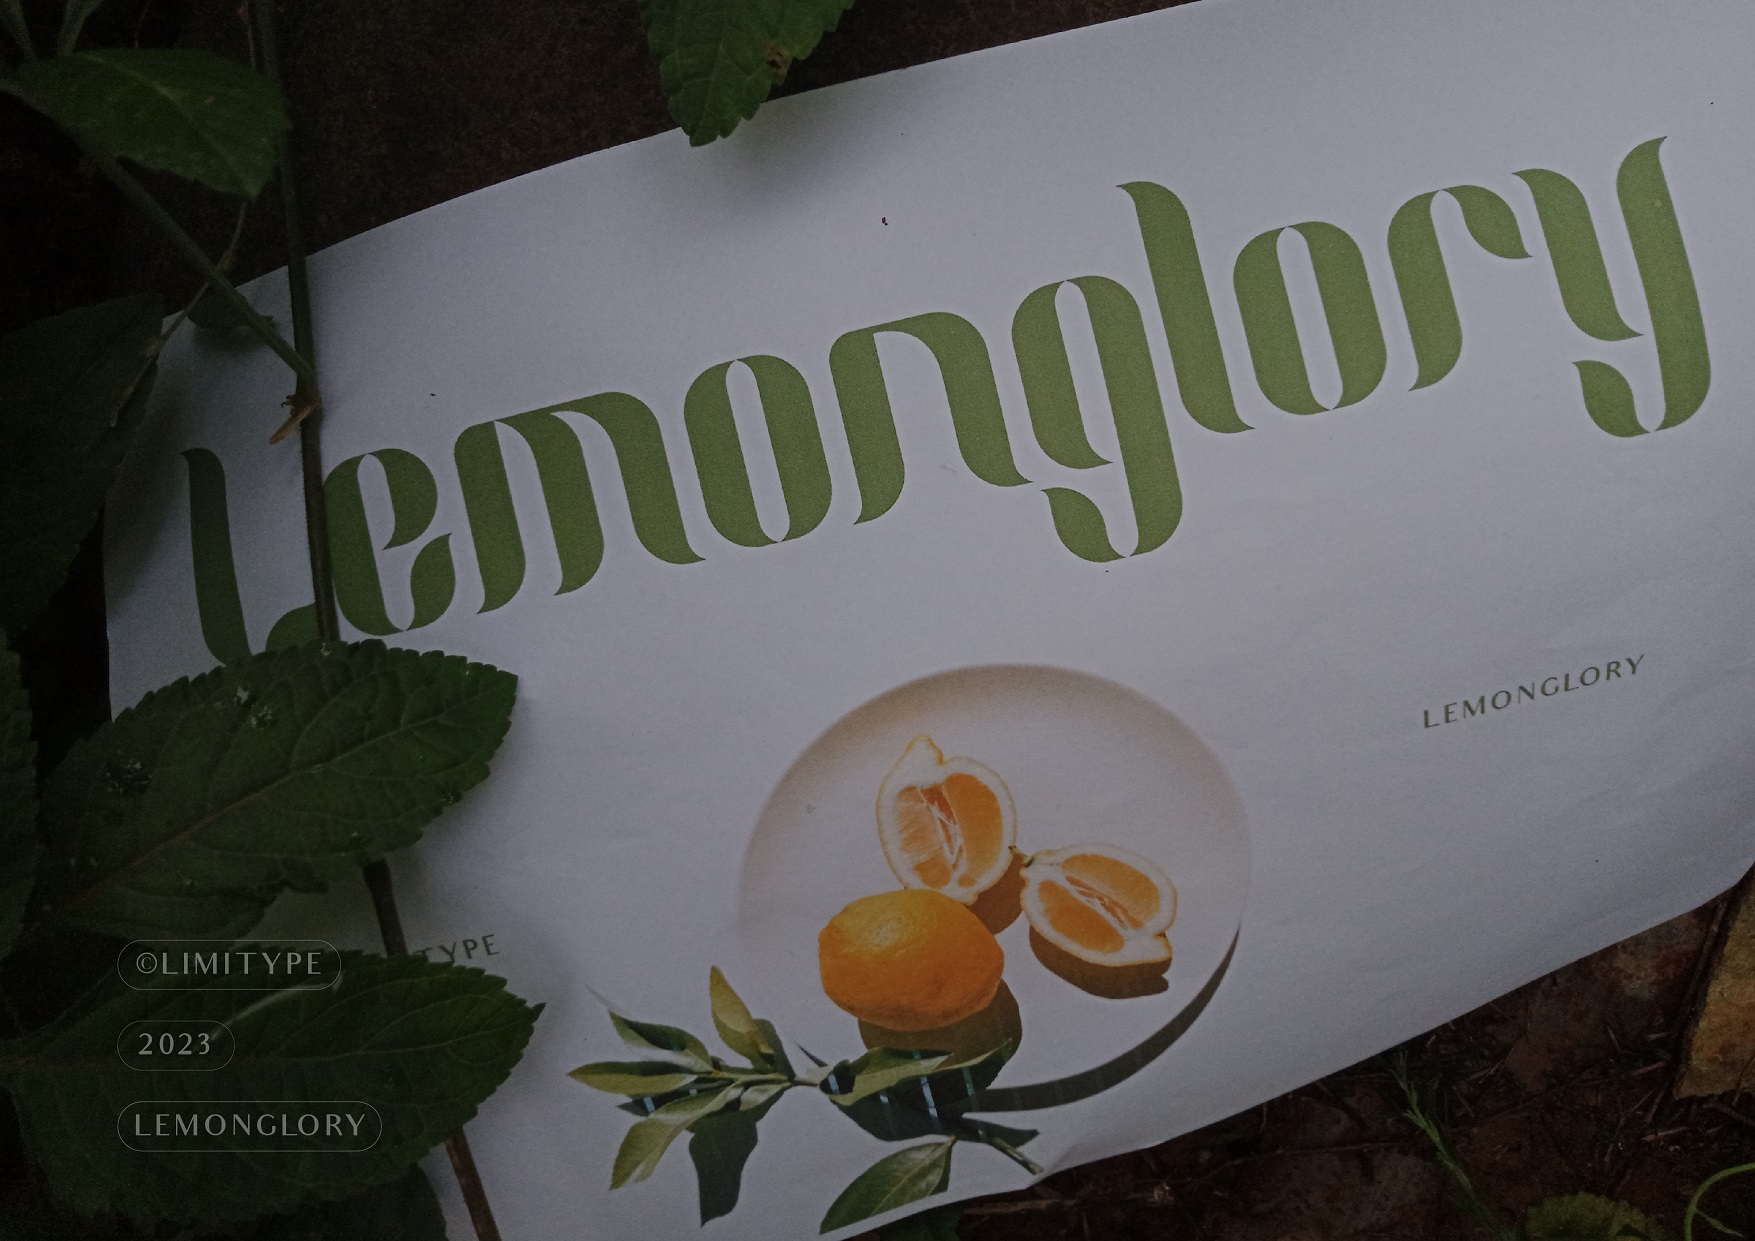 Lemonglory